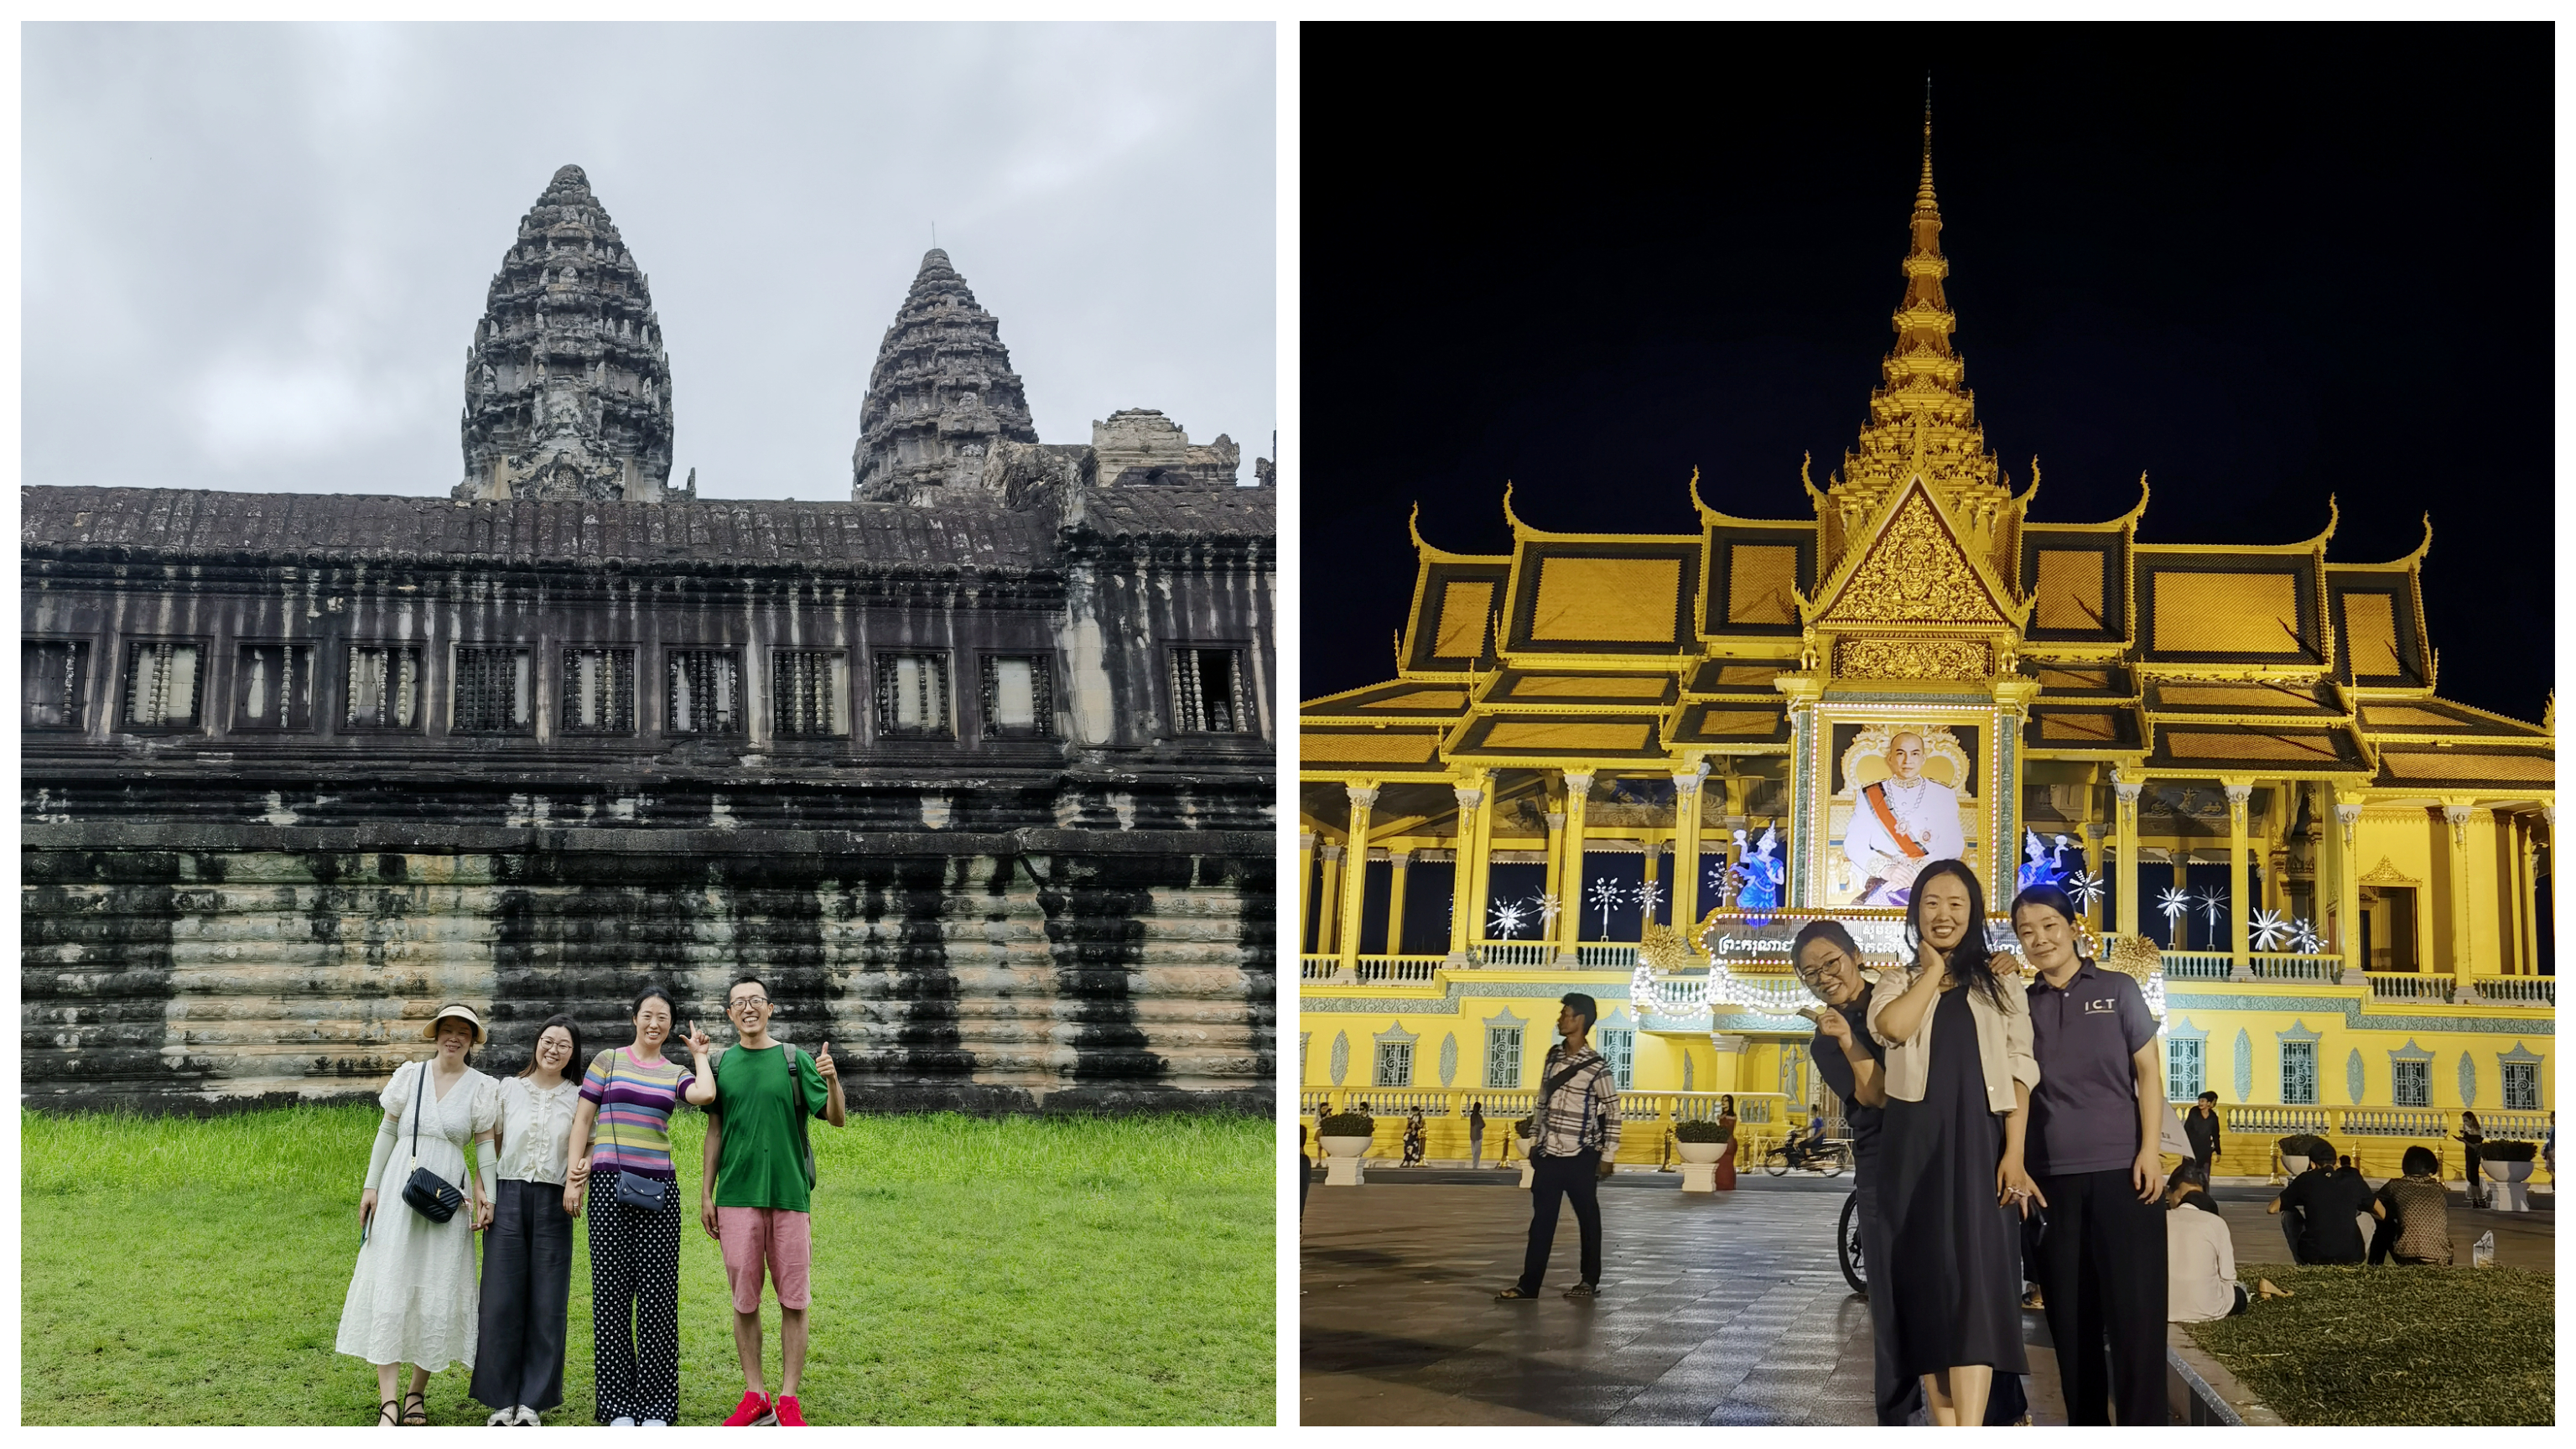 The Grand Palace of Cambodia and Angkor Wat